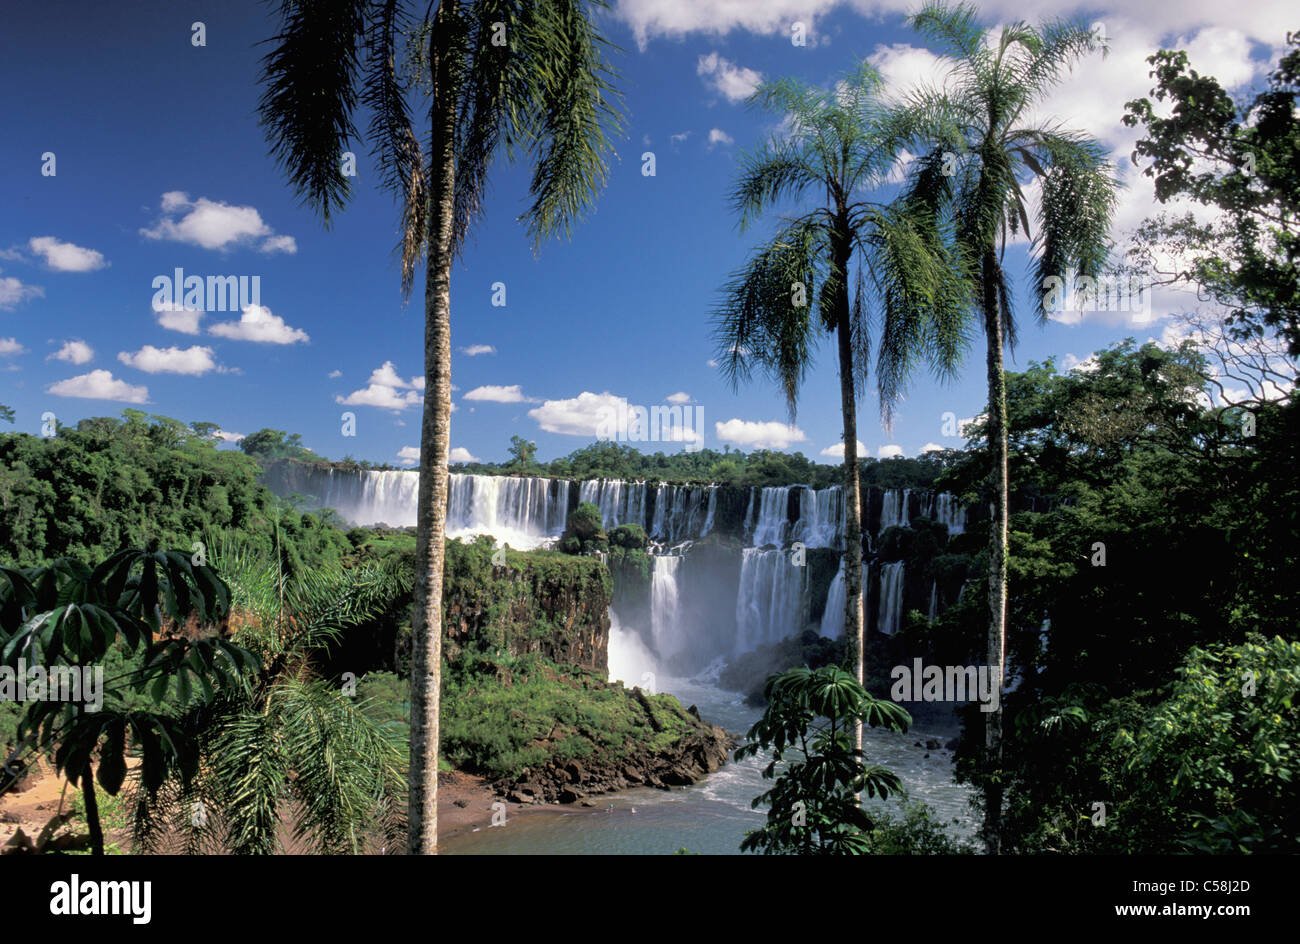 Parque National do Iguazu Cataratas do Iguaçu, chutes d'Iguazu,, Foz do Iguazu, Parana, Brésil, Amérique du Sud, cascade, palm Banque D'Images